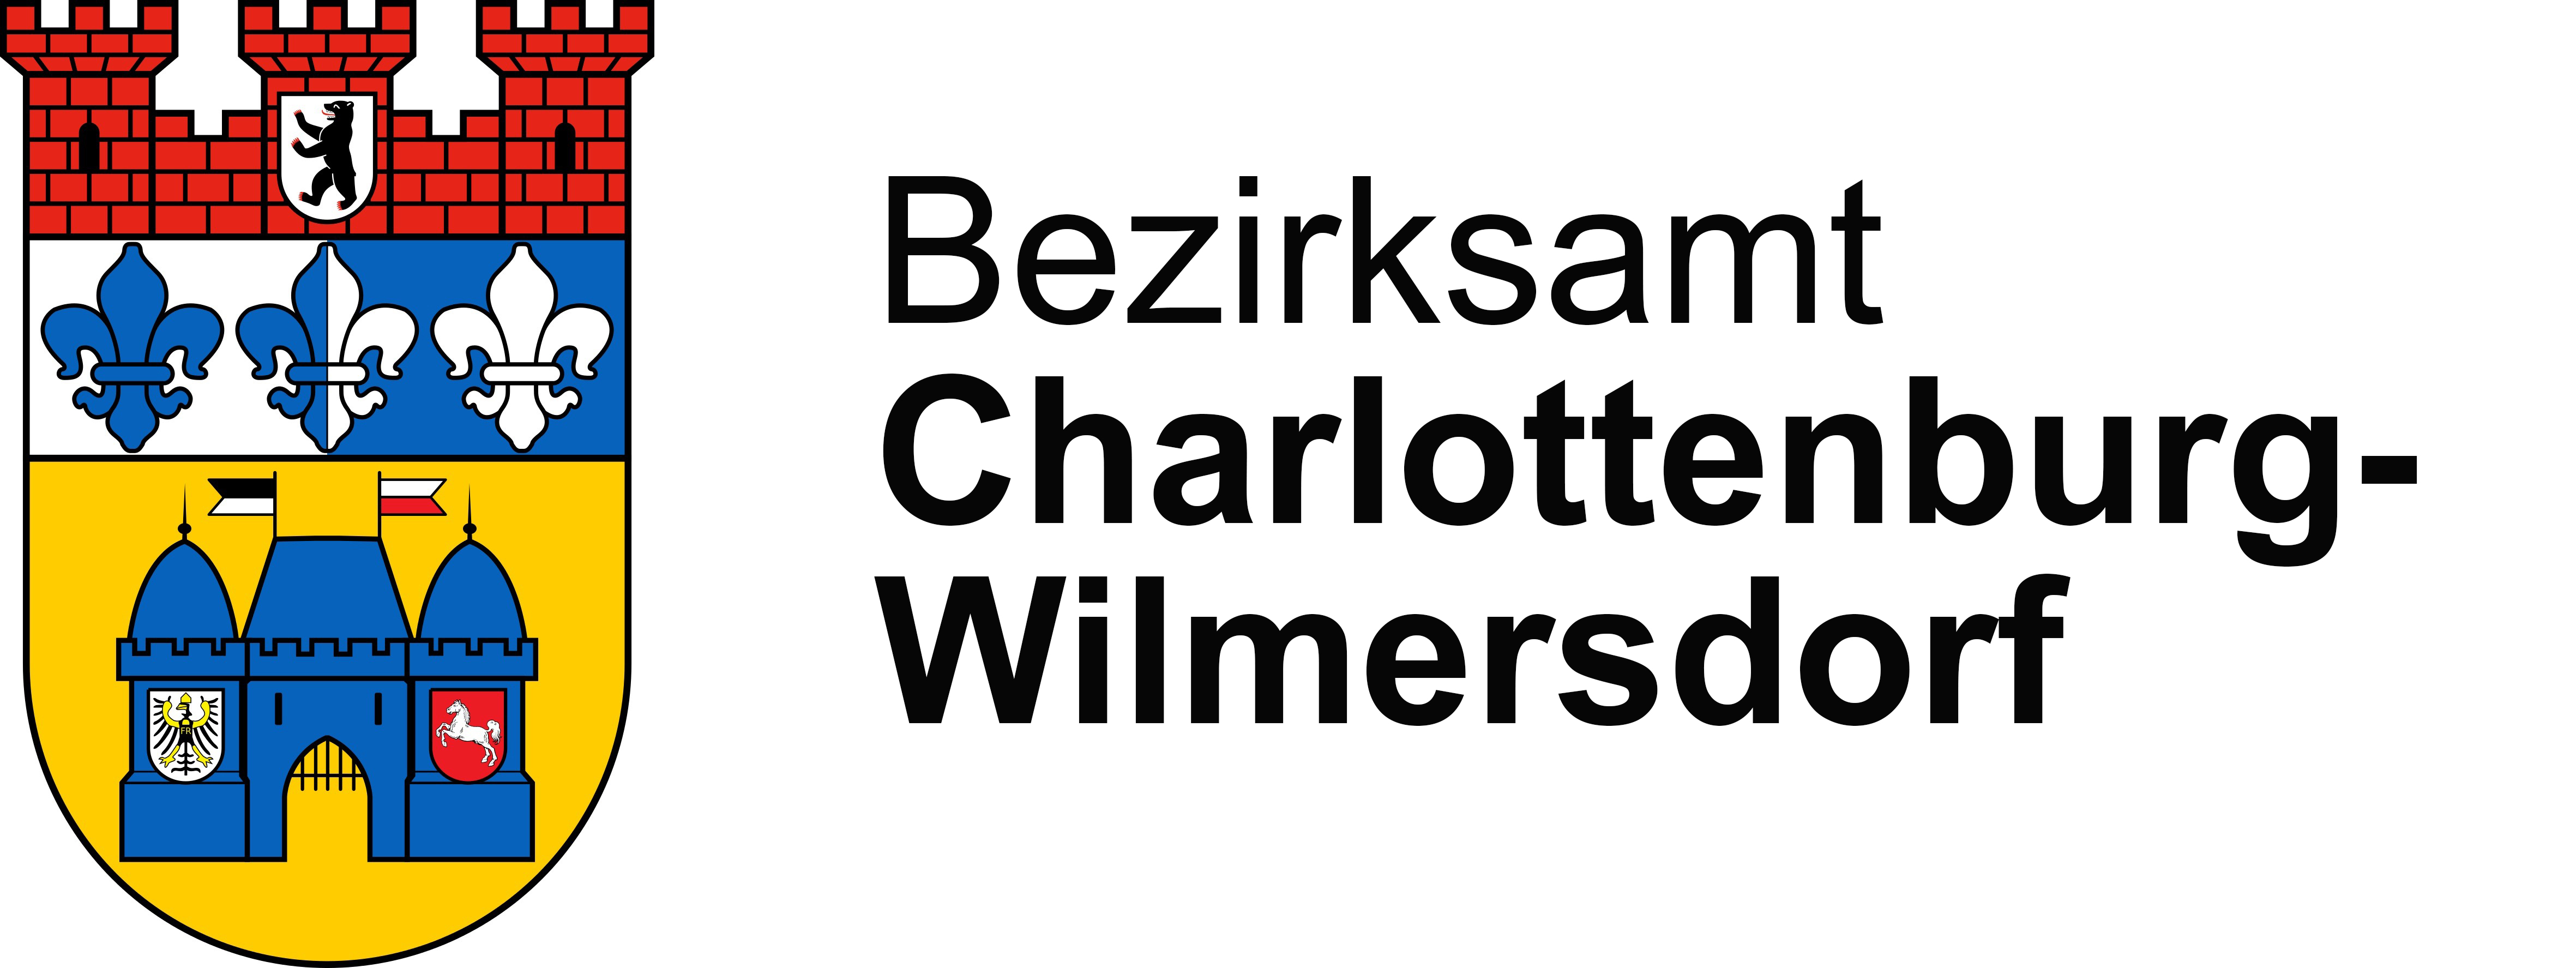 zur Interessenbekundung des Bezirksamts Charlottenburg-Wilmersdorf